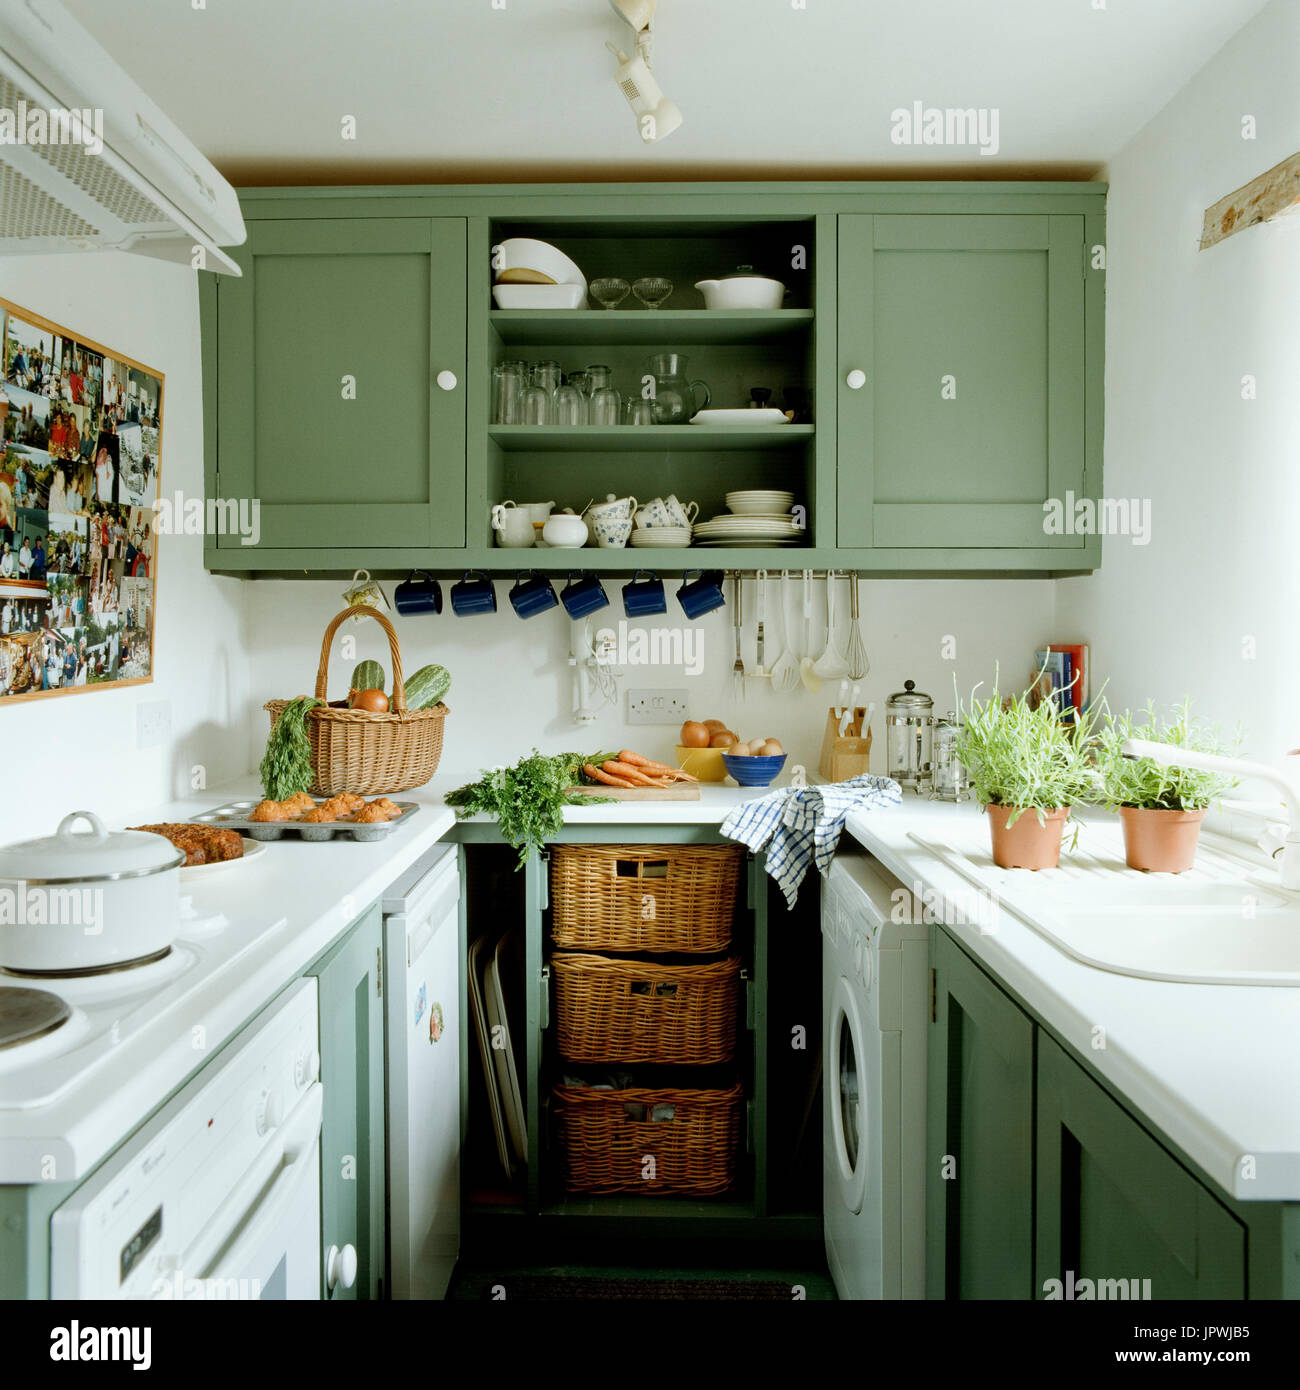 Interior De Cocina Con Utensilios De Cocina Modernos En Tonos Verdes.  Fotos, retratos, imágenes y fotografía de archivo libres de derecho. Image  207602706